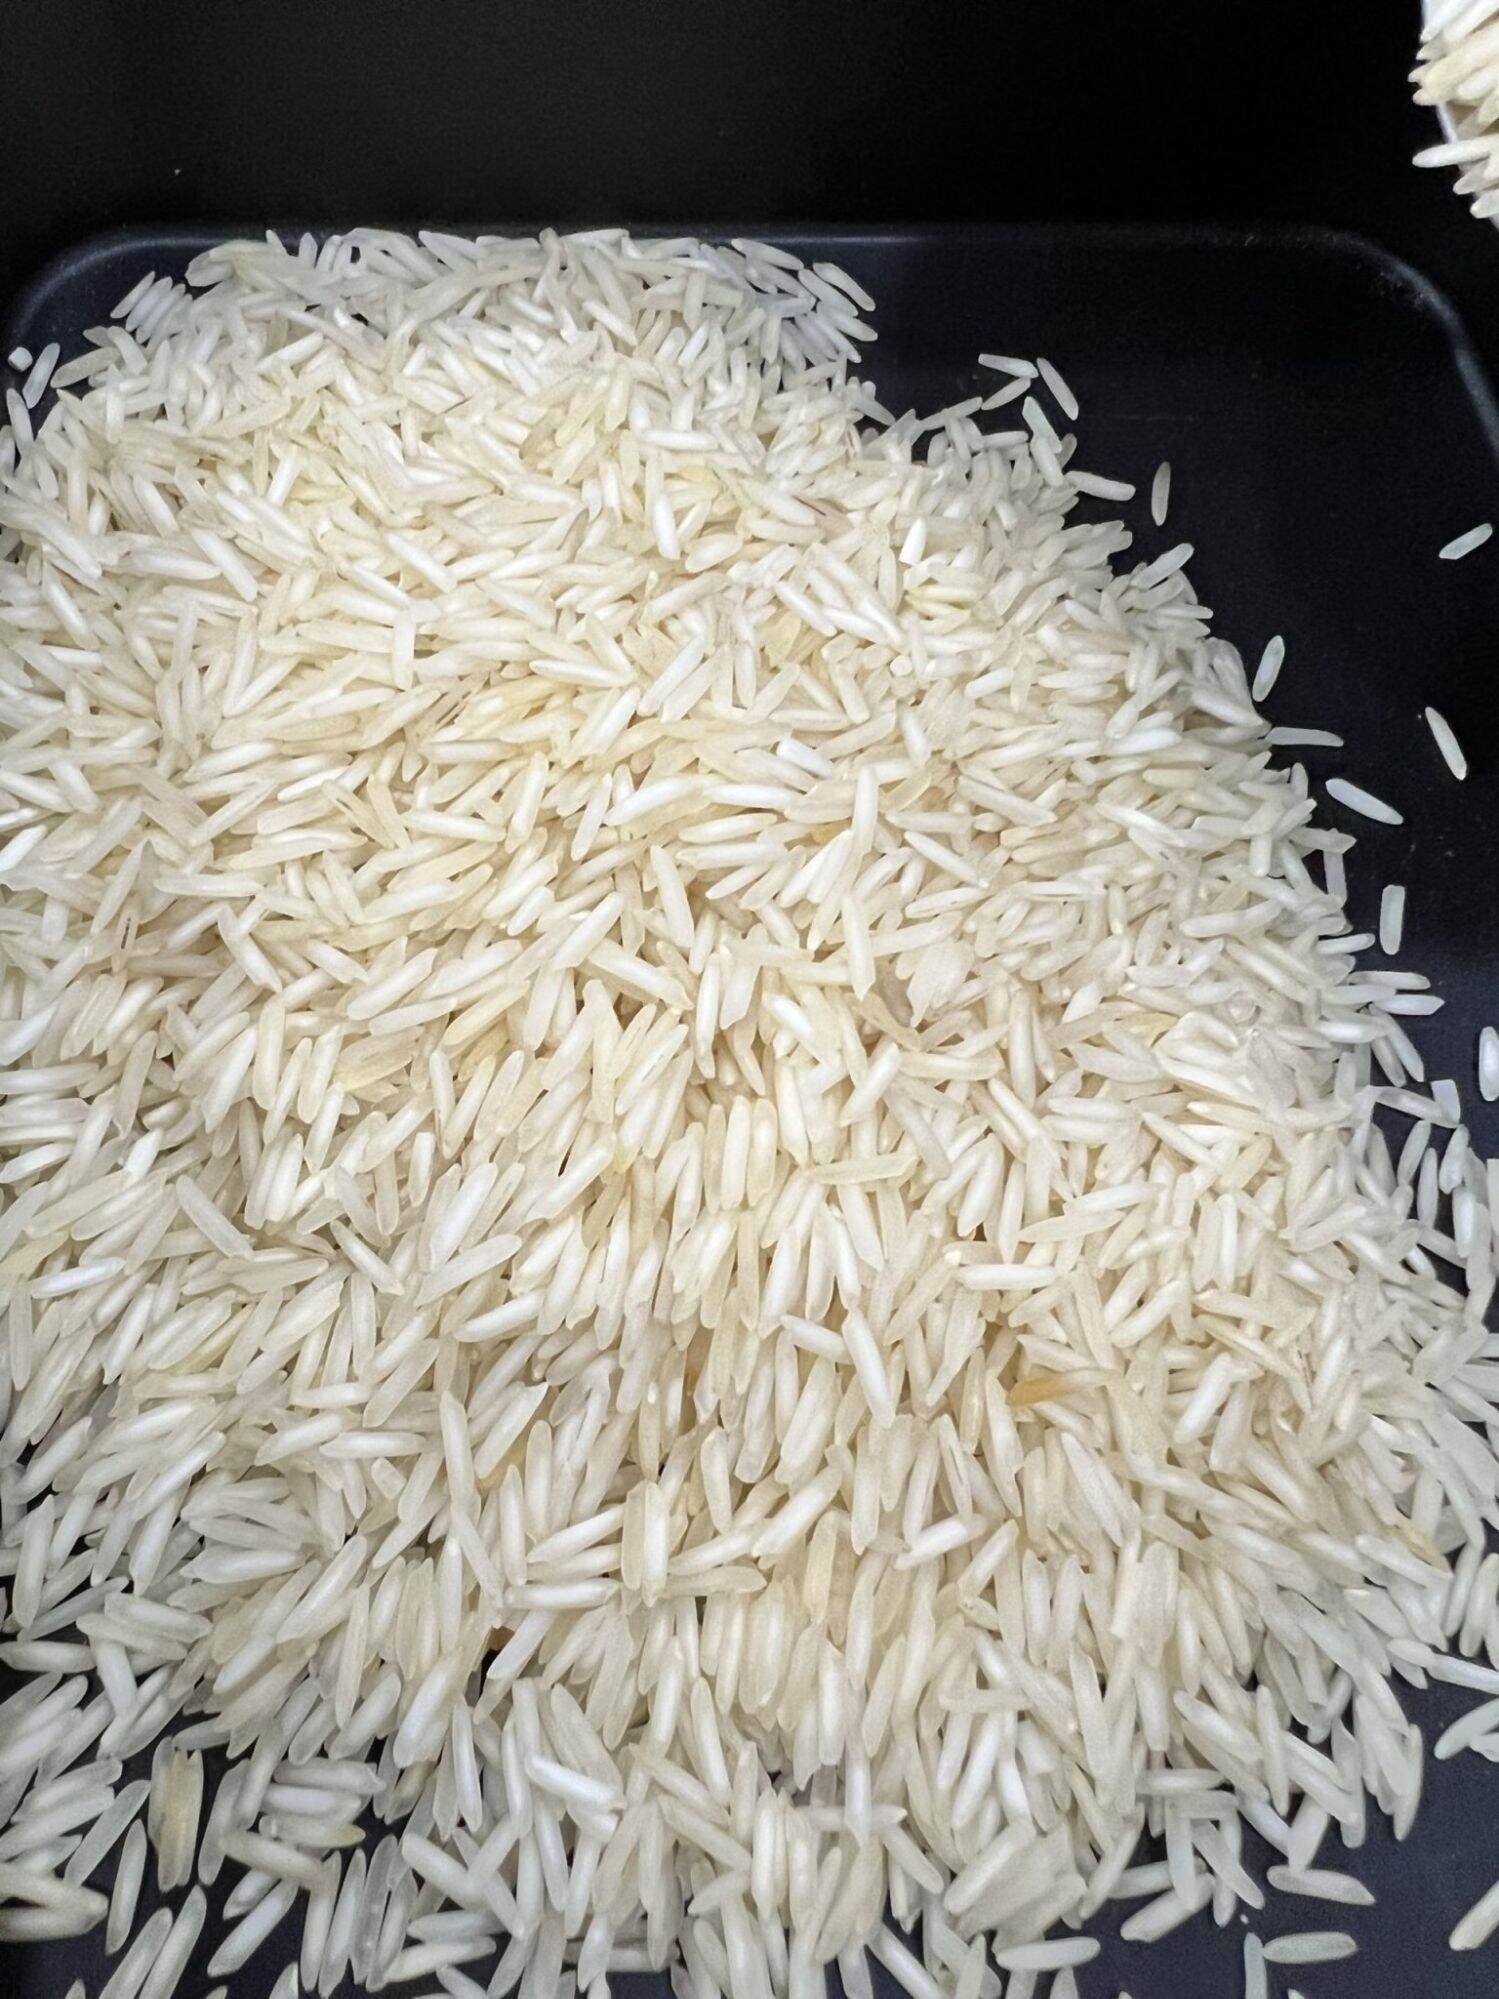 Gạo basmati - gạo nhập khẩu từ ấn độ - ảnh sản phẩm 1